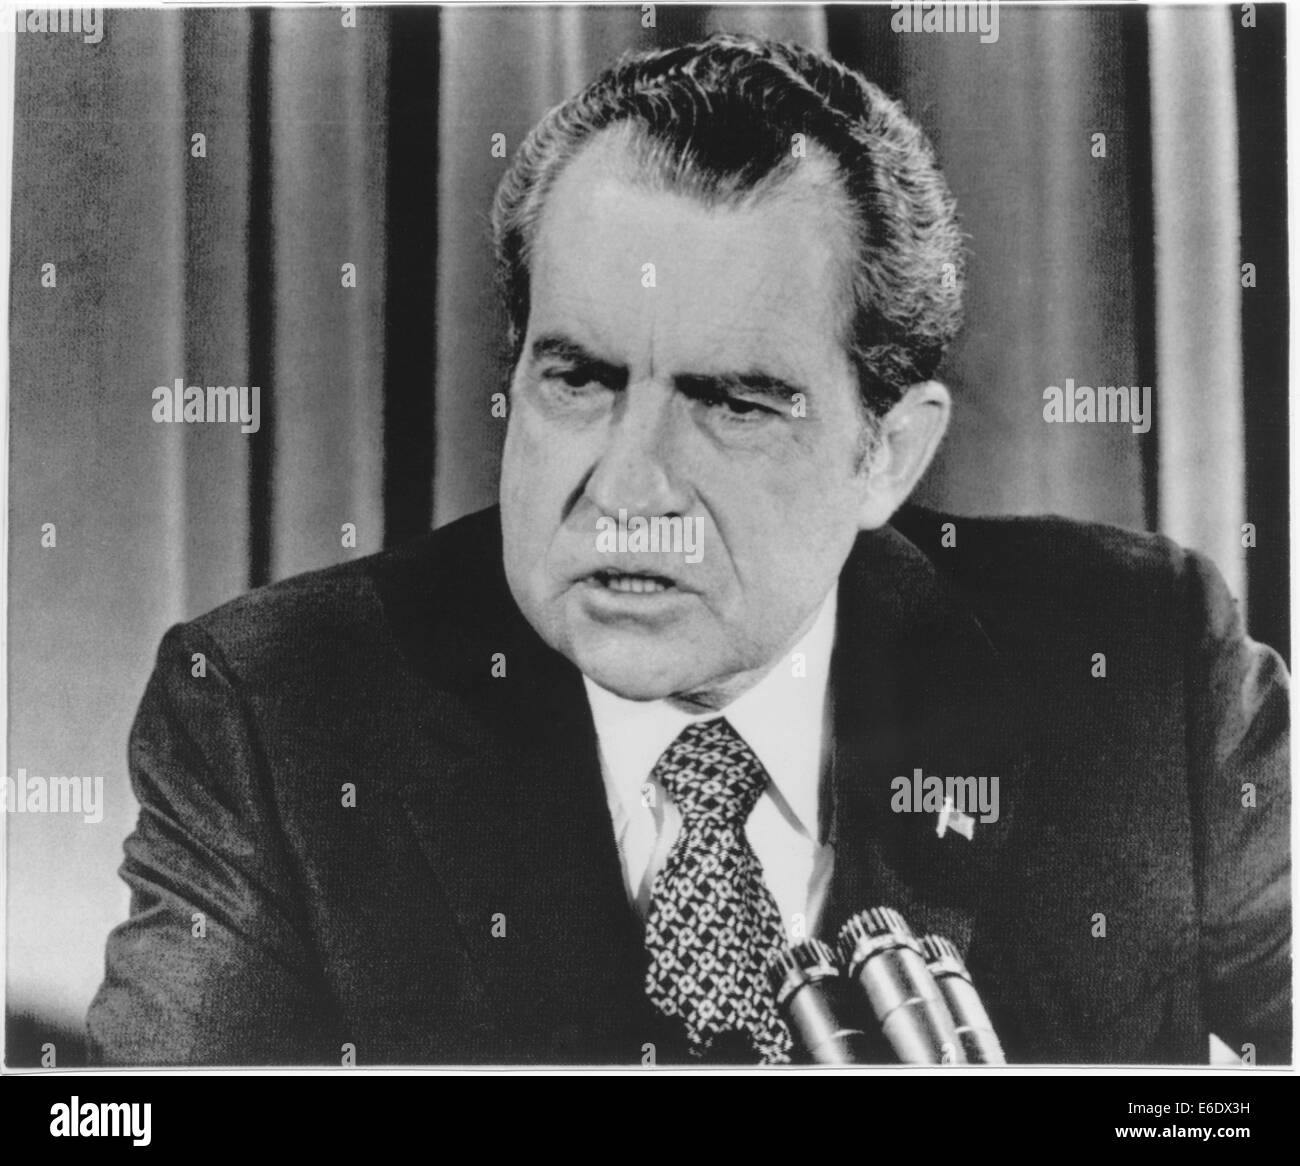 Le président américain Richard Nixon lors de conférence de presse concernant la crise au Moyen-Orient et le Watergate, 1973 Banque D'Images